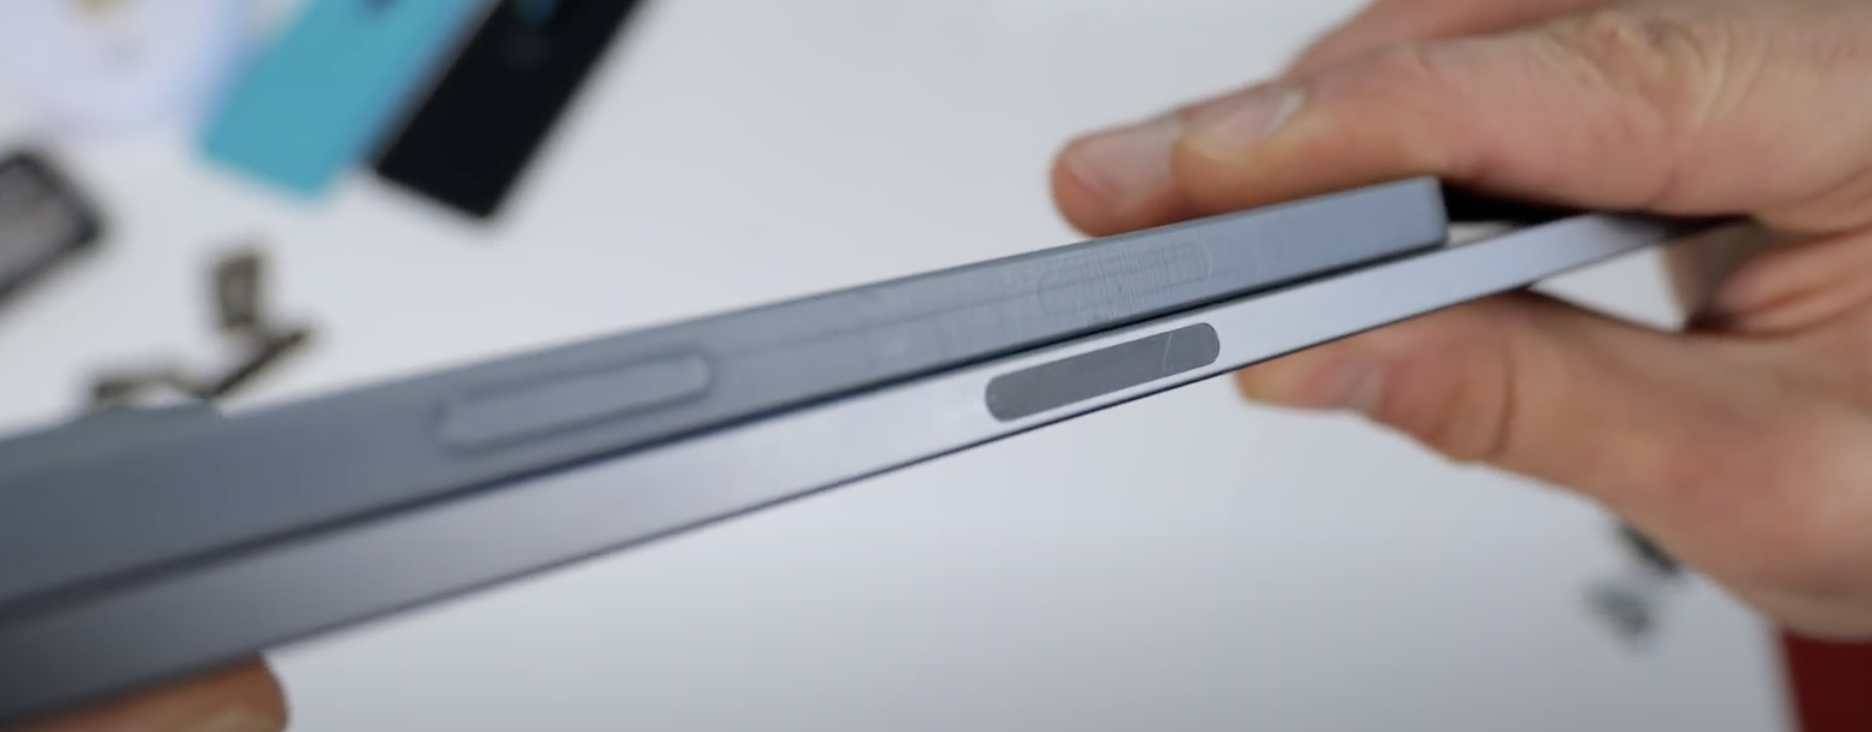 Phác thảo iPhone 12 Pro Max cho thấy khung mỏng hơn, viền màn hình nhỏ hơn và dải ăng-ten lớn hơn